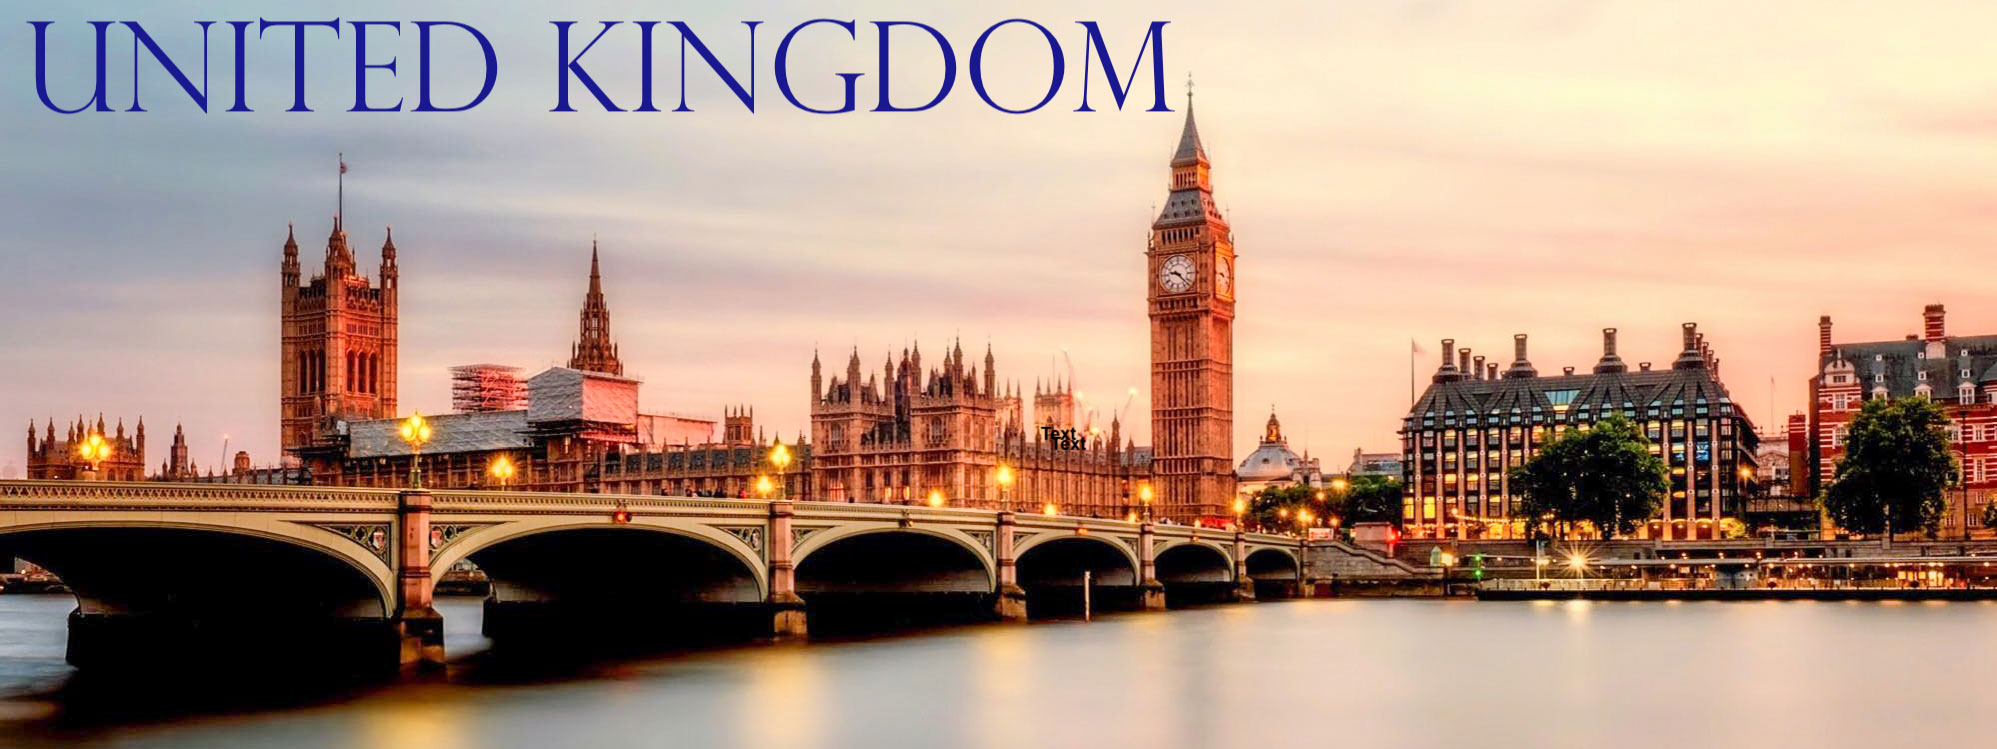 United Kingdom Luxury Travel Vacation Tours